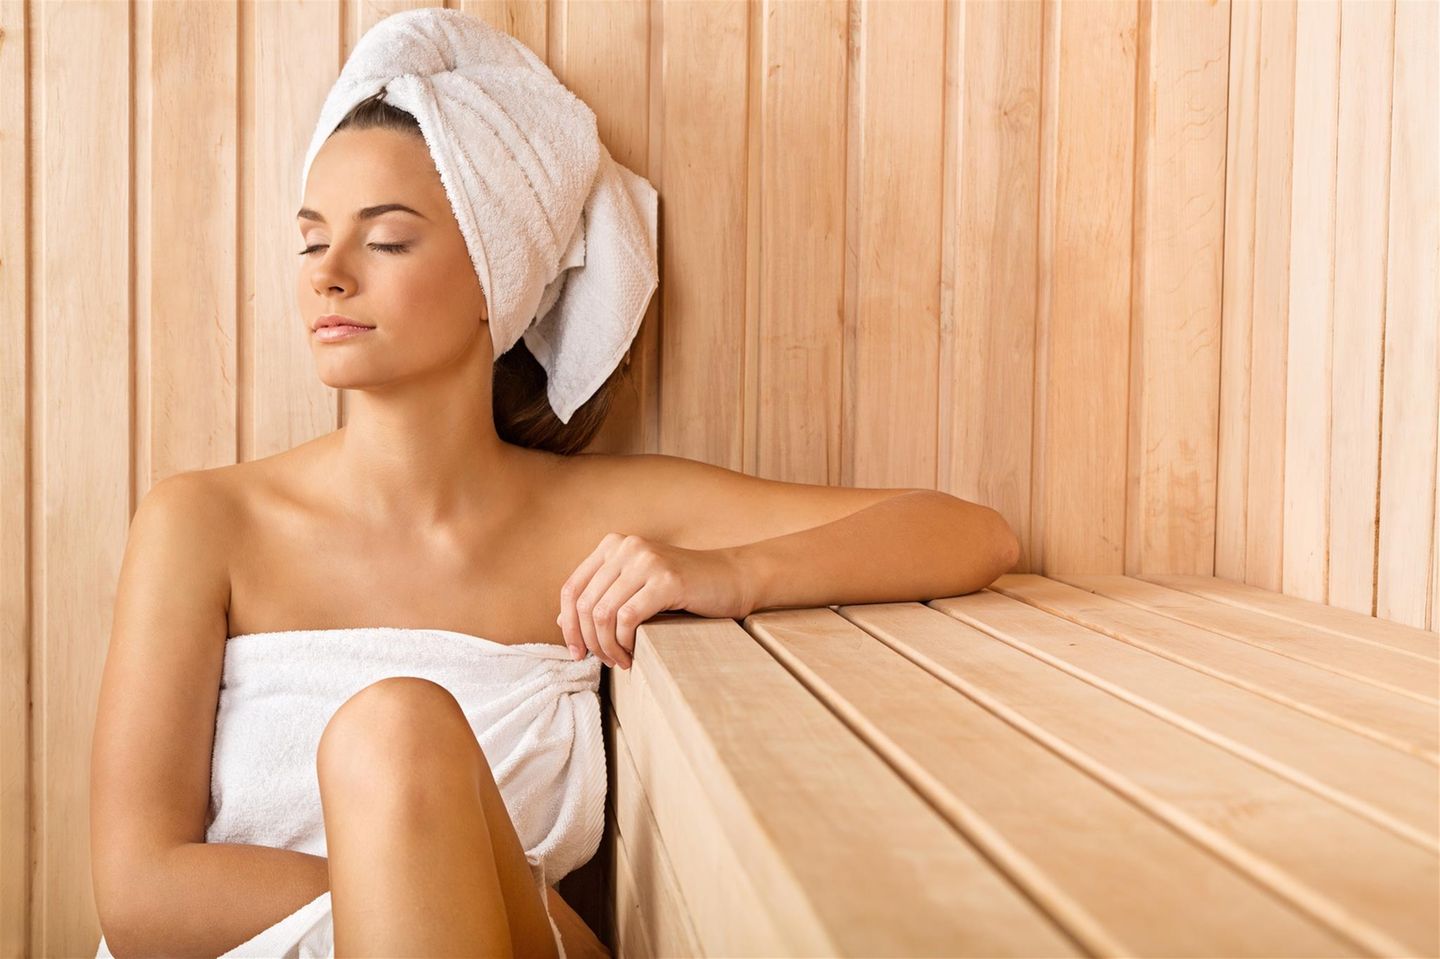 Ein Sauna-Besuch mindert den Alltagsstress und stärkt das Immunsystem